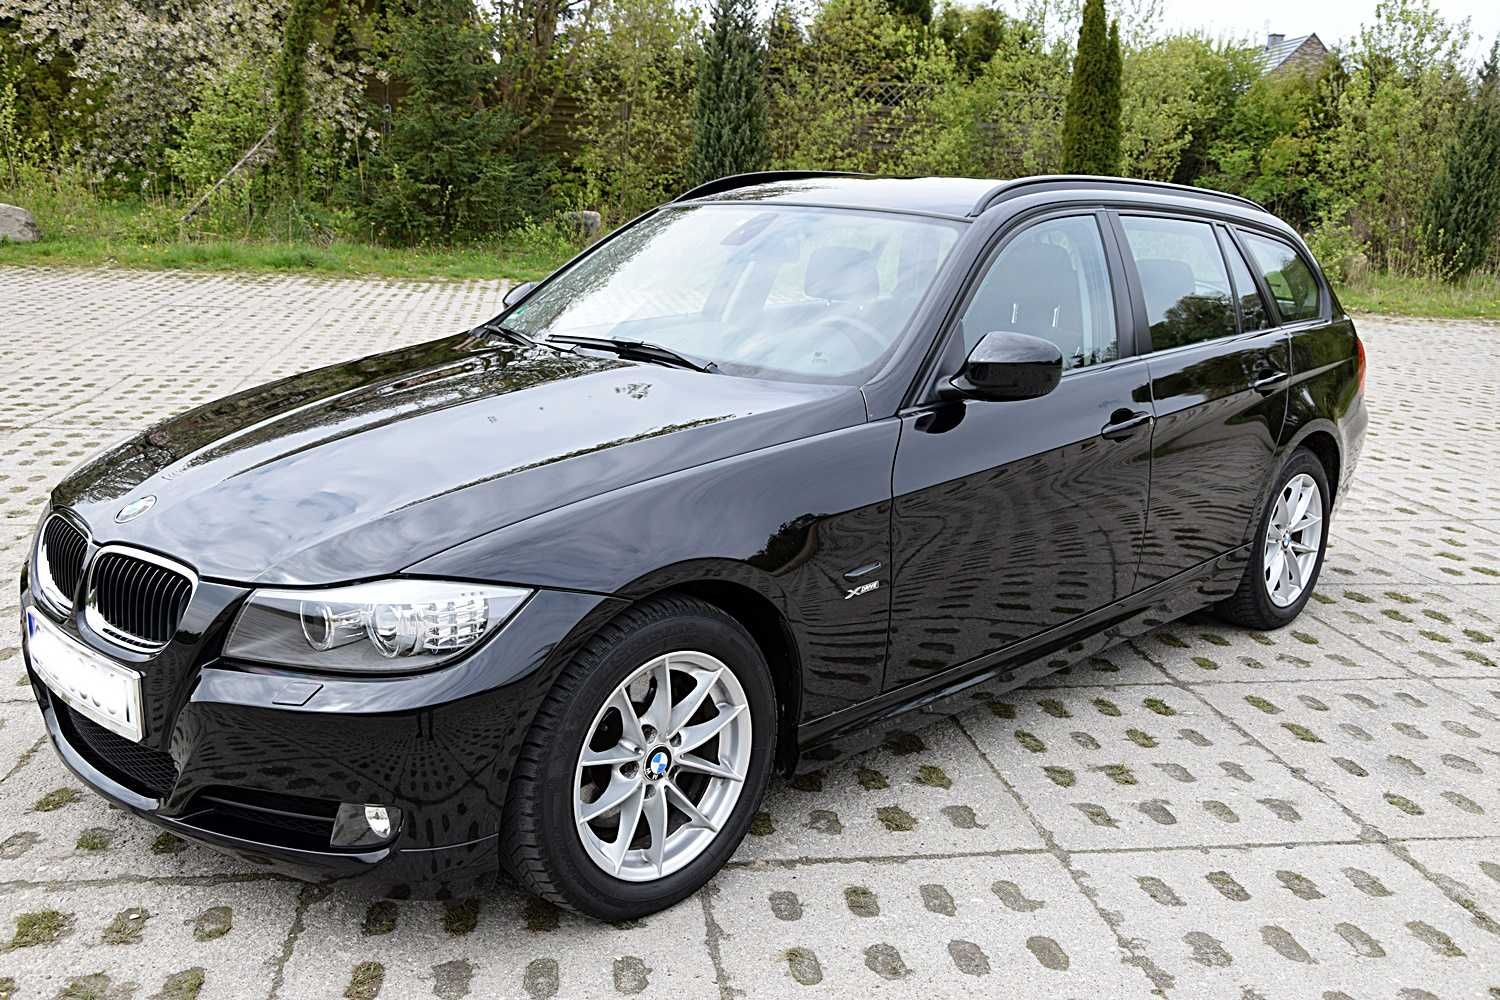 BMW Seria 3 x - drive automat ,2.0, 180 KM, bardzo ładna, godna uwagi